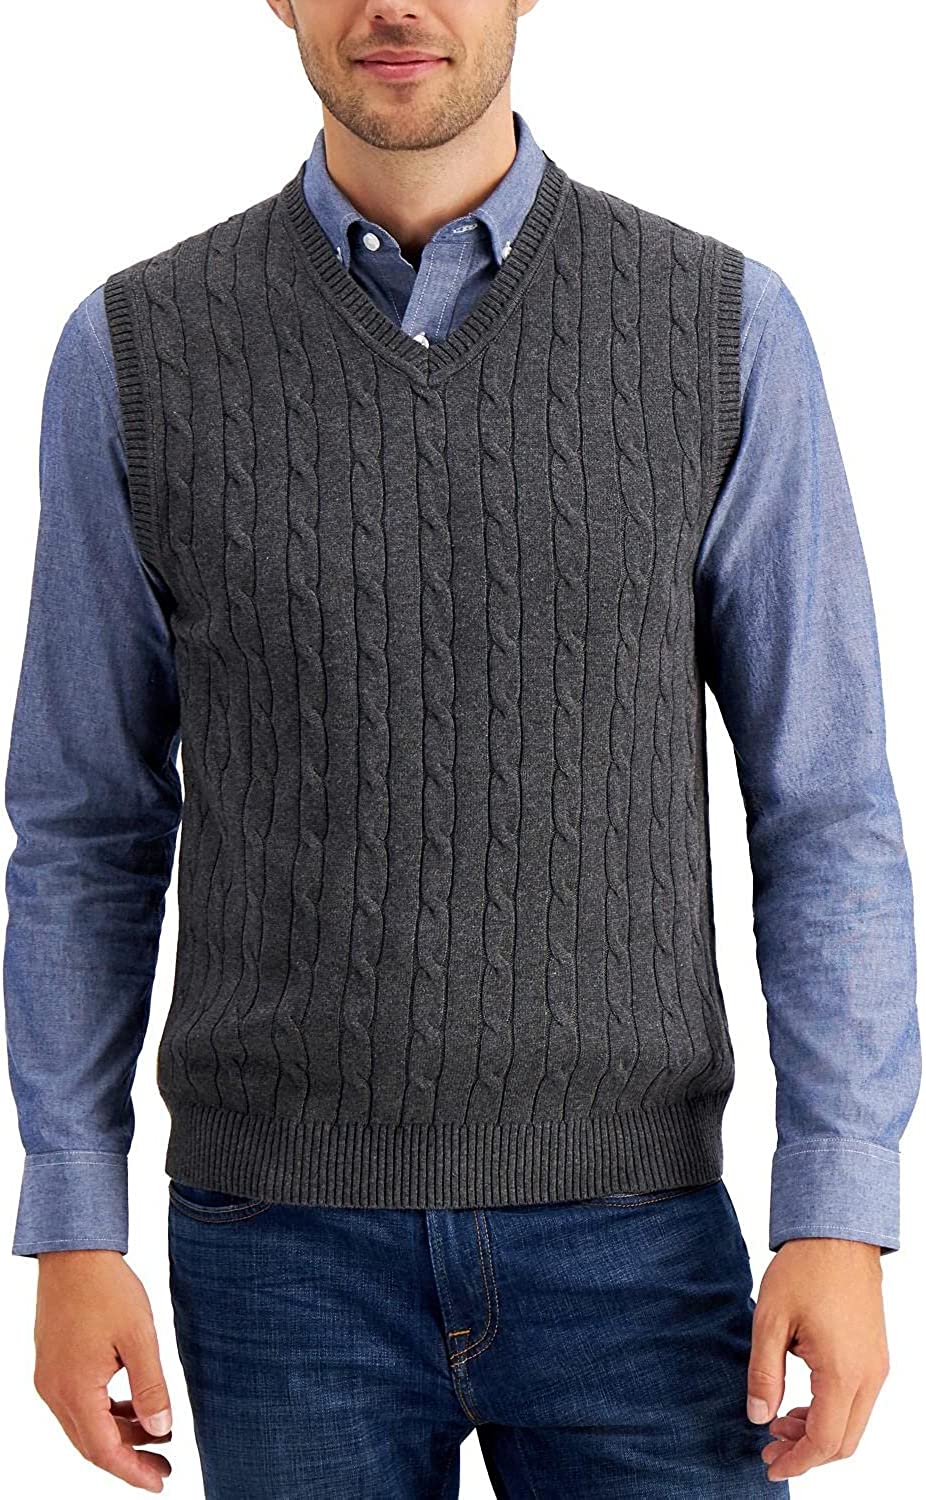 MNCEGEER Men's Sleeveless Knitwear Vest